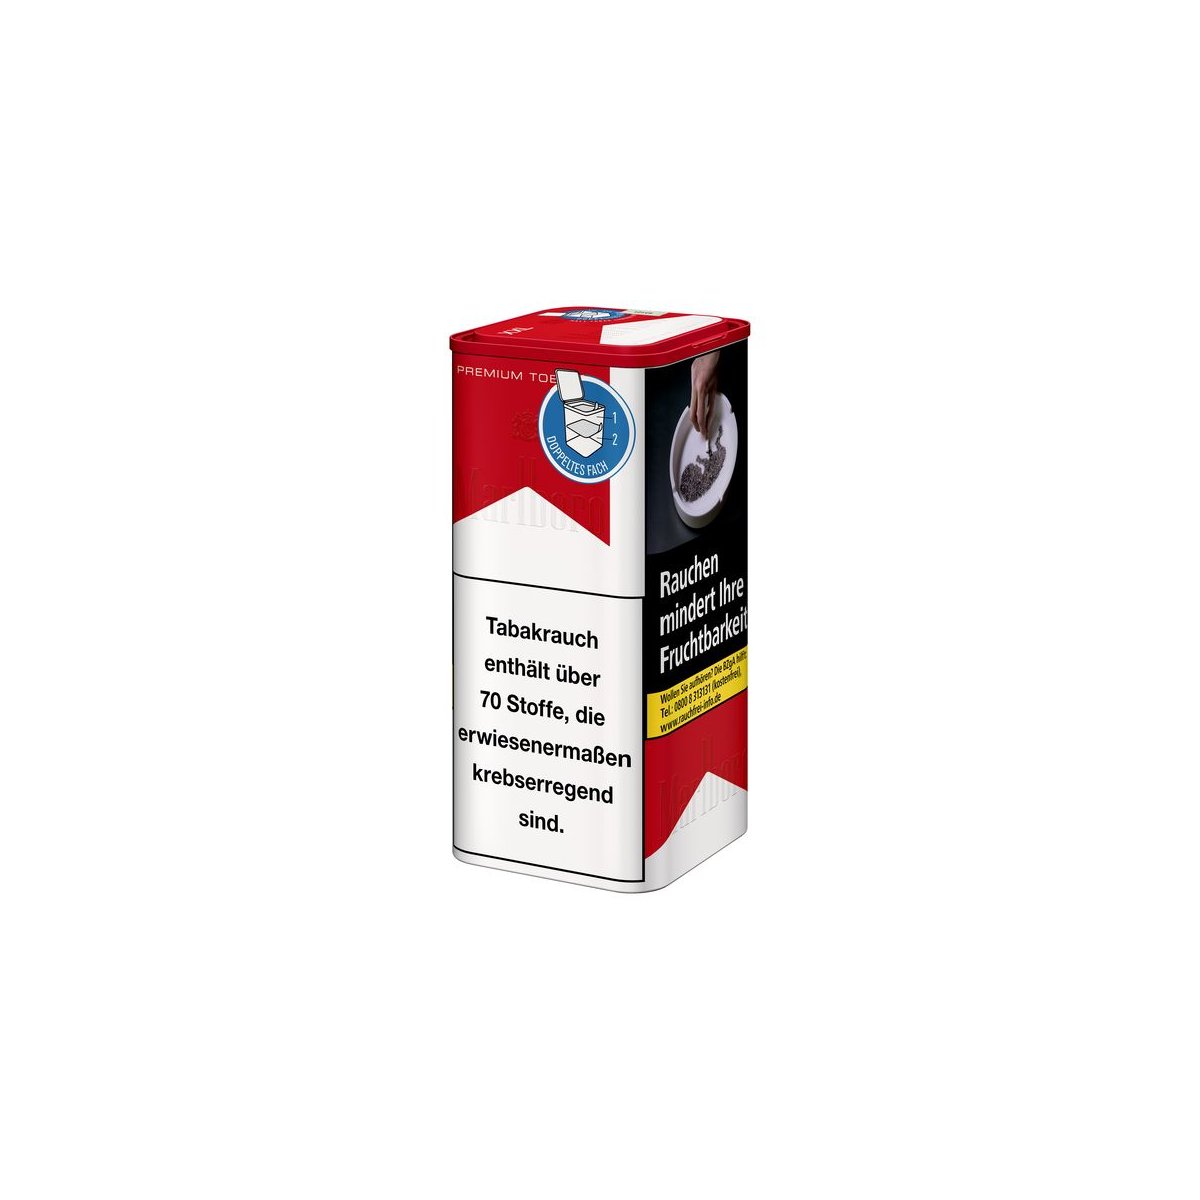 DOSE Marlboro Zigarettentabak Red Premium 160 Gramm Online Kaufen, Für nur  34,50 €